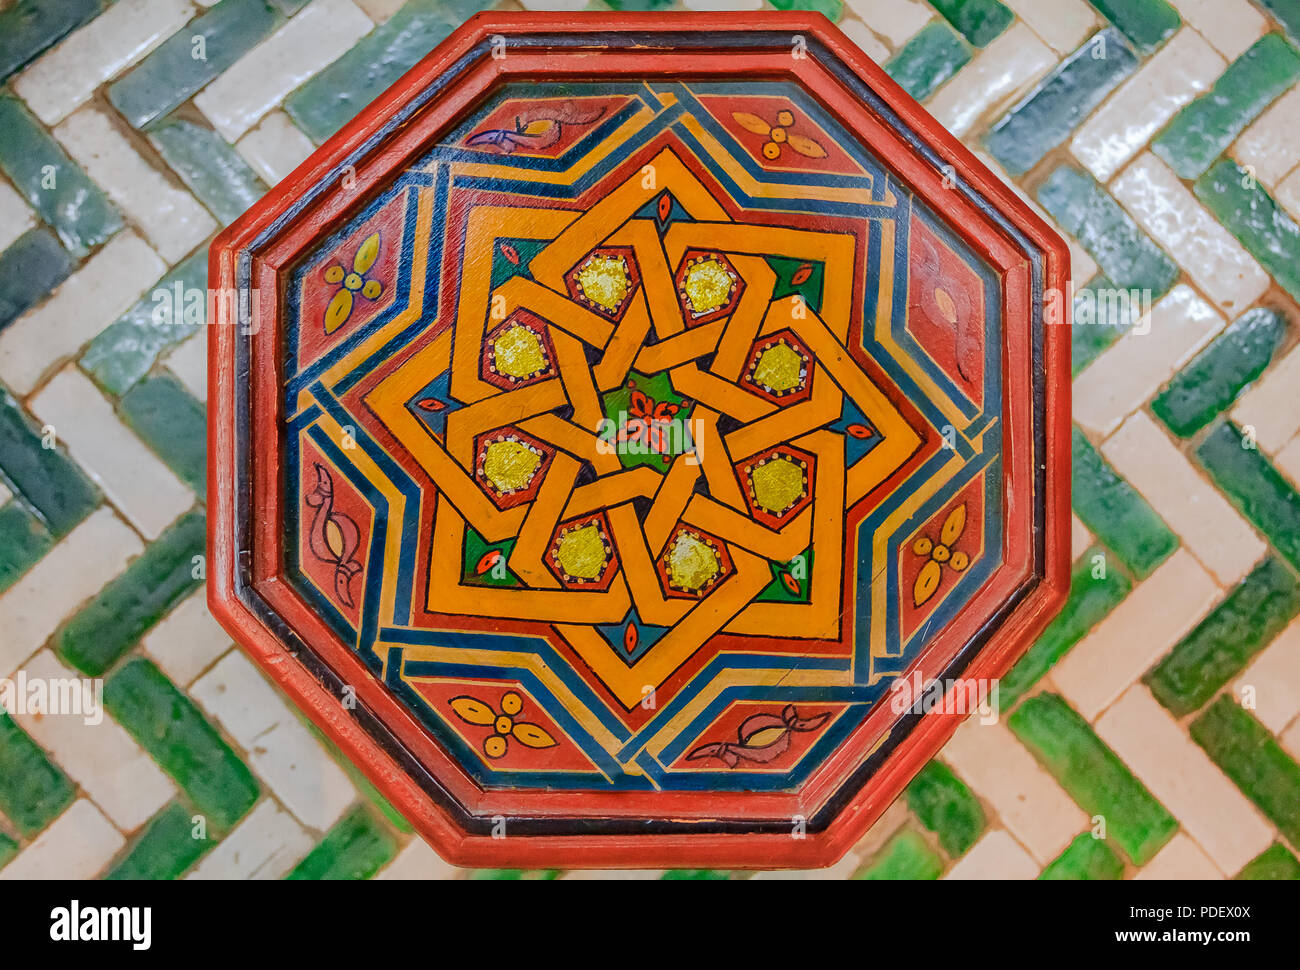 Peinte à la main décoré tabouret marocain traditionnel avec des dessins géométriques, debout sur un plancher de tuiles Banque D'Images